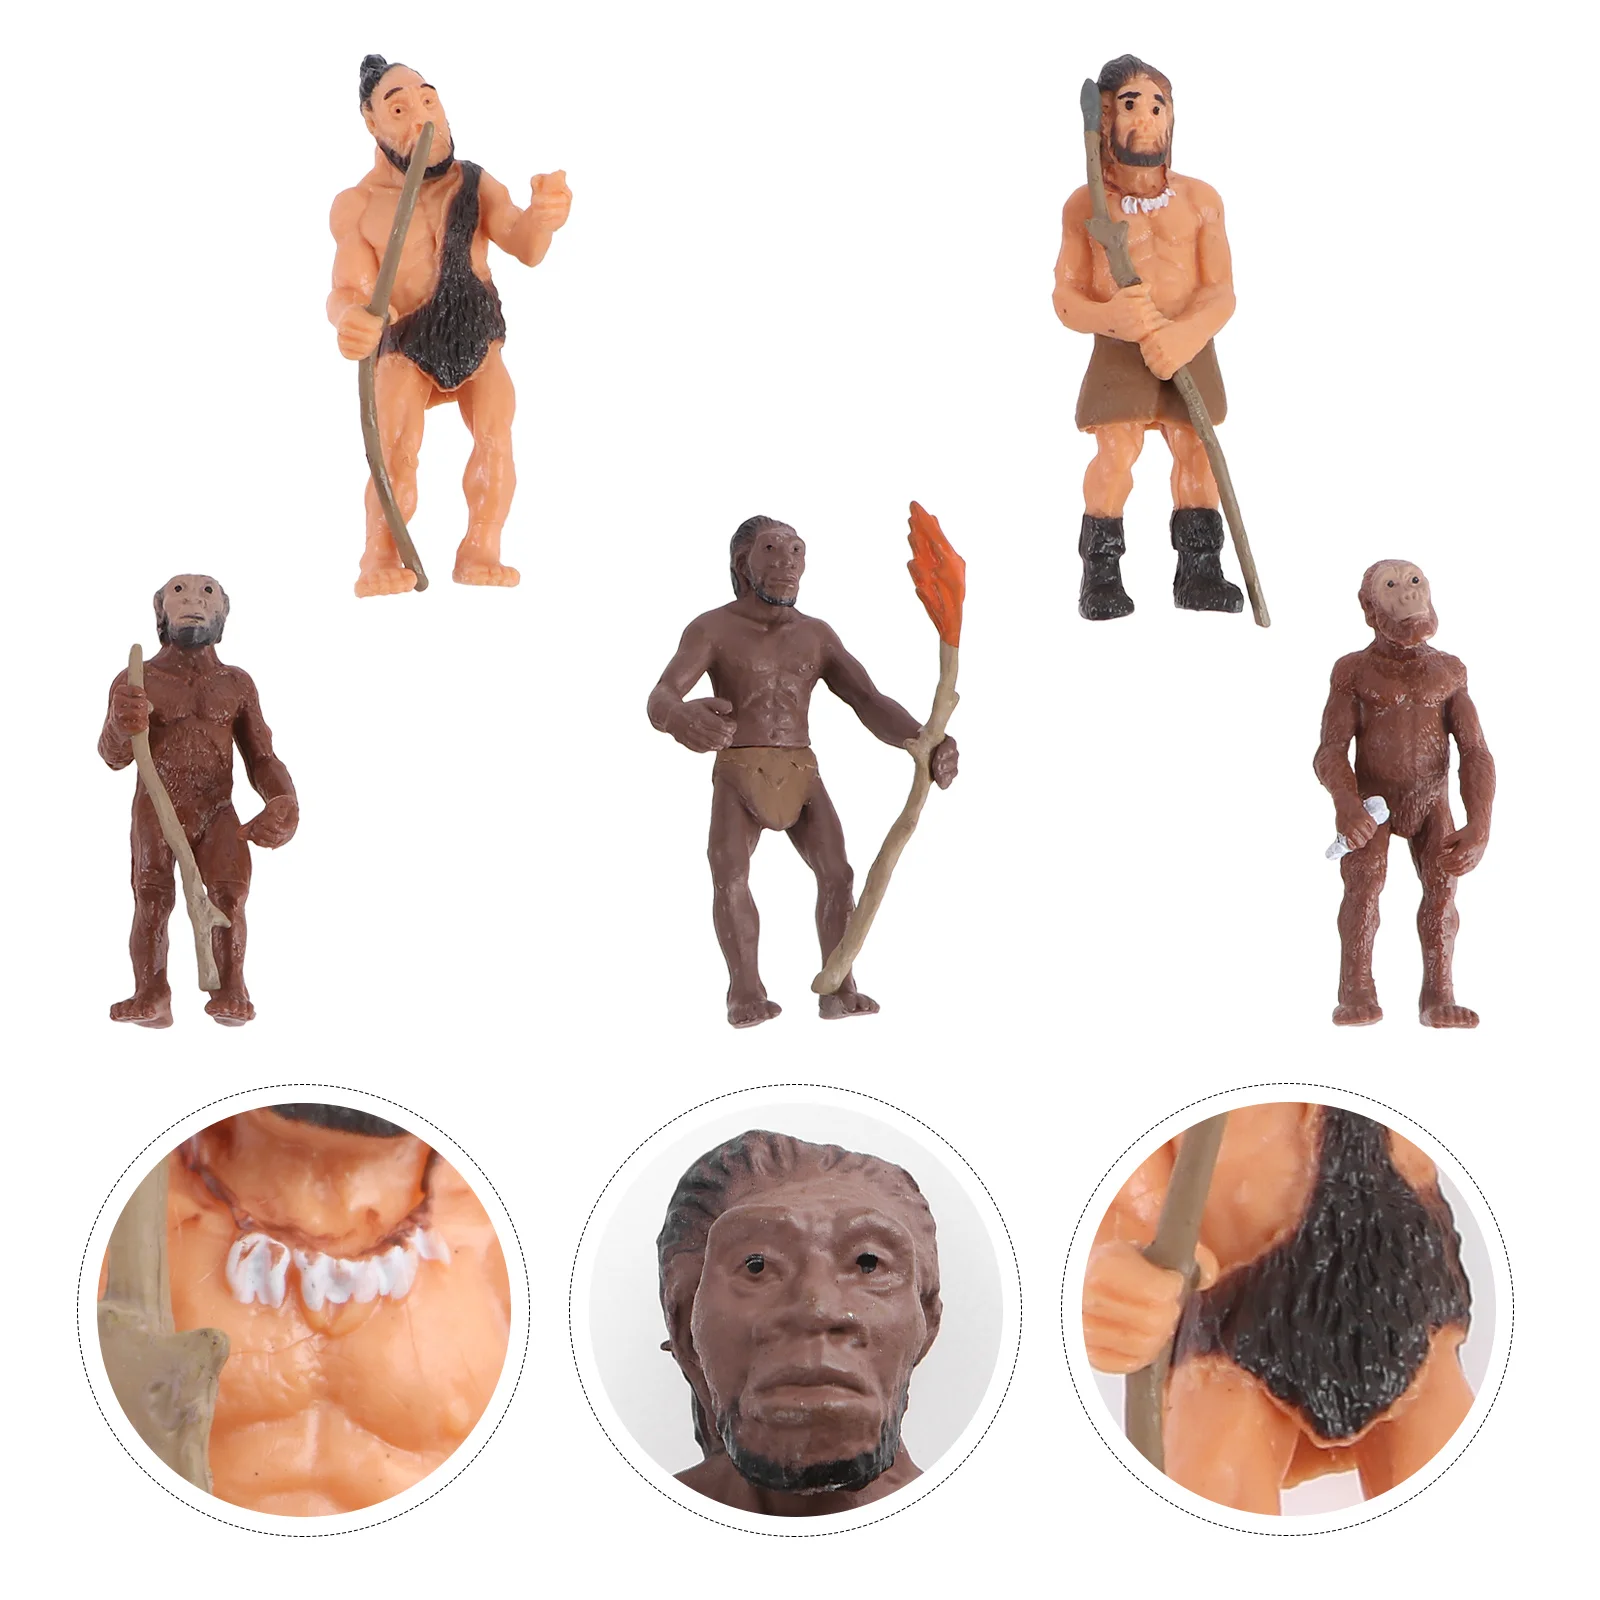 

Игрушка человеческое тело Мамонт игрушка сквиз игрушки эмуляция человеческие дети развивающие игрушки ковбои индейцы игрушки подарок Эво...